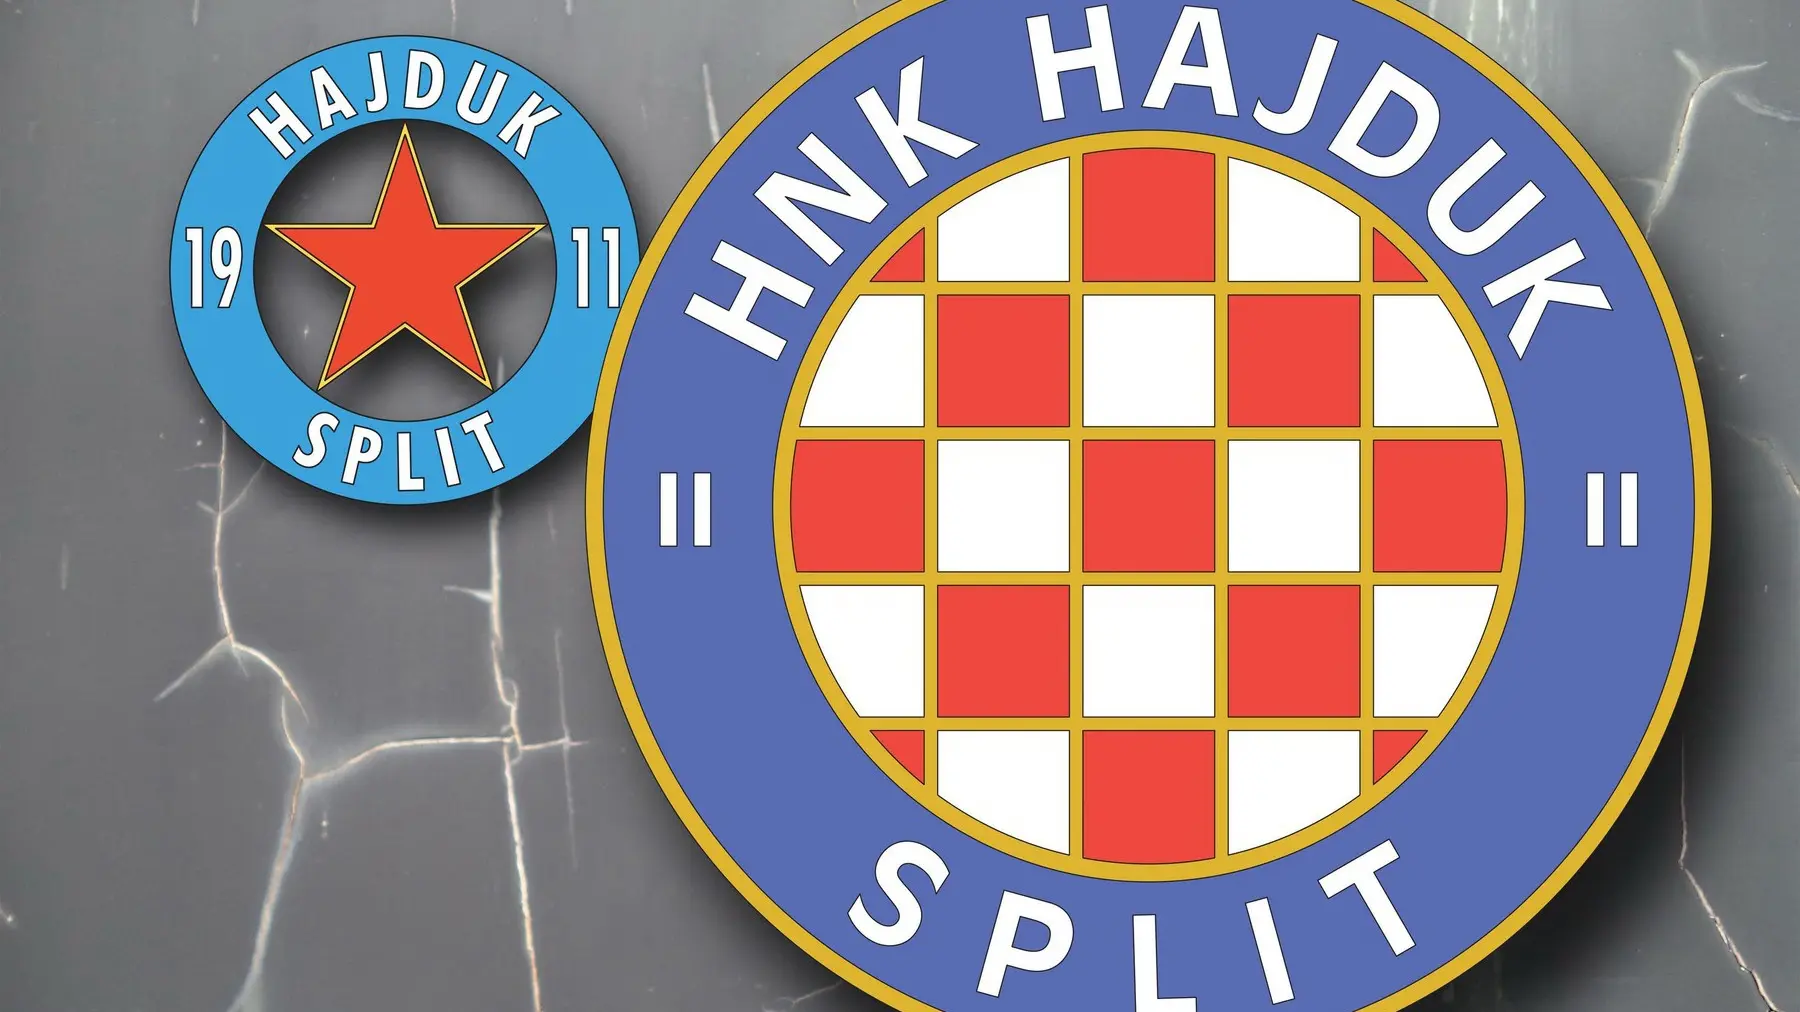 FK Hajduk logo-6416e931b451e.webp